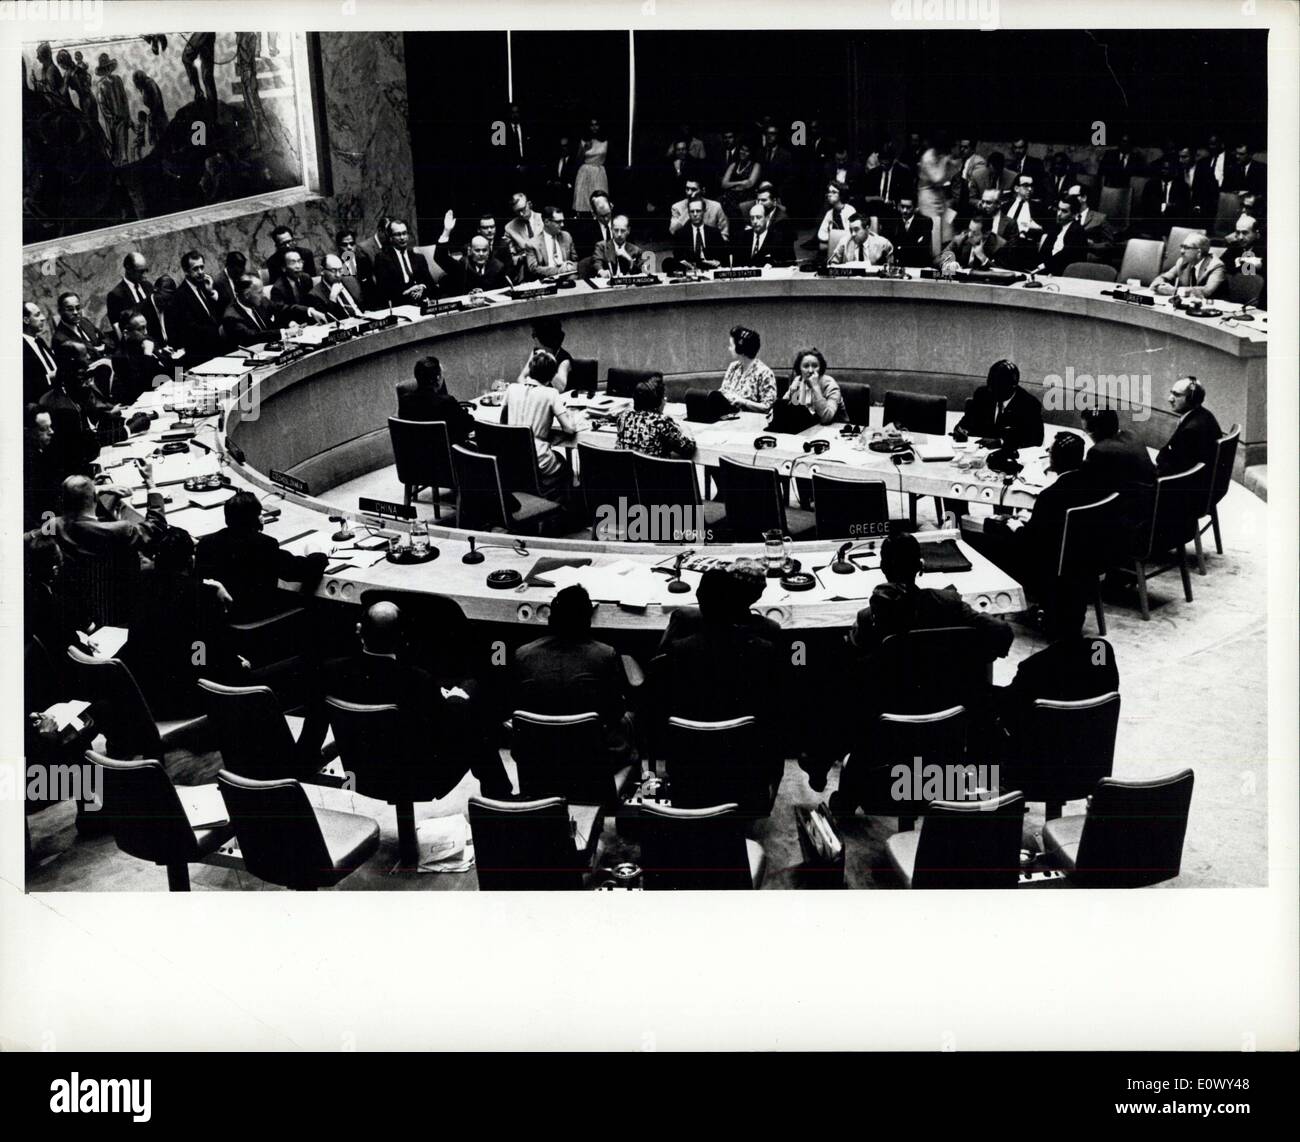 9. August 1964 - Sicherheitsrat fordert für sofortigen Waffenstillstand In Zypern: Der Sicherheitsrat seine Aussprache heute weiter Beschwerden durch die Türkei und Cyrus und verabschiedete eine Entwurf für einen sofortigen Waffenstillstand in Zypern. Darüber hinaus aufgefordert die Auflösung aller Beteiligten zu voll und ganz mit dem Kommandeur der UN-Friedenstruppen in Zypern kooperieren bei der Wiederherstellung von Frieden und Sicherheit auf der Insel. Einen Überblick über den Sicherheitsrat bei der Abstimmung über den Entwurf einer Entschließung Stockfoto